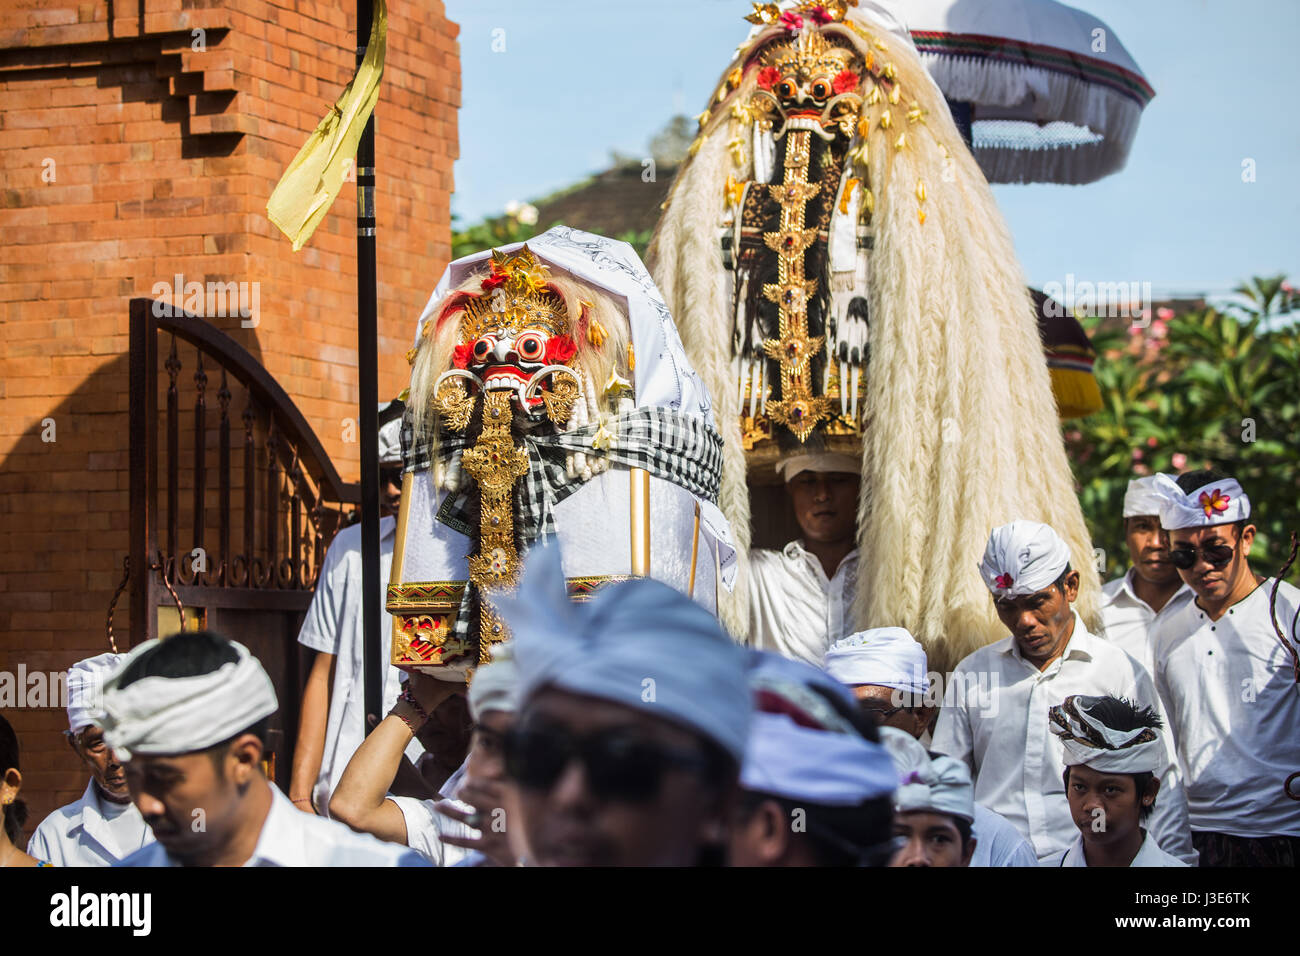 Maskierte Männer in beängstigend Rangda Kostümen die Dämon-Königin der Hexen sind in einer Bali-Zeremonie umgeben von Horden von hinduistischen Balinesen Anhänger getragen Stockfoto